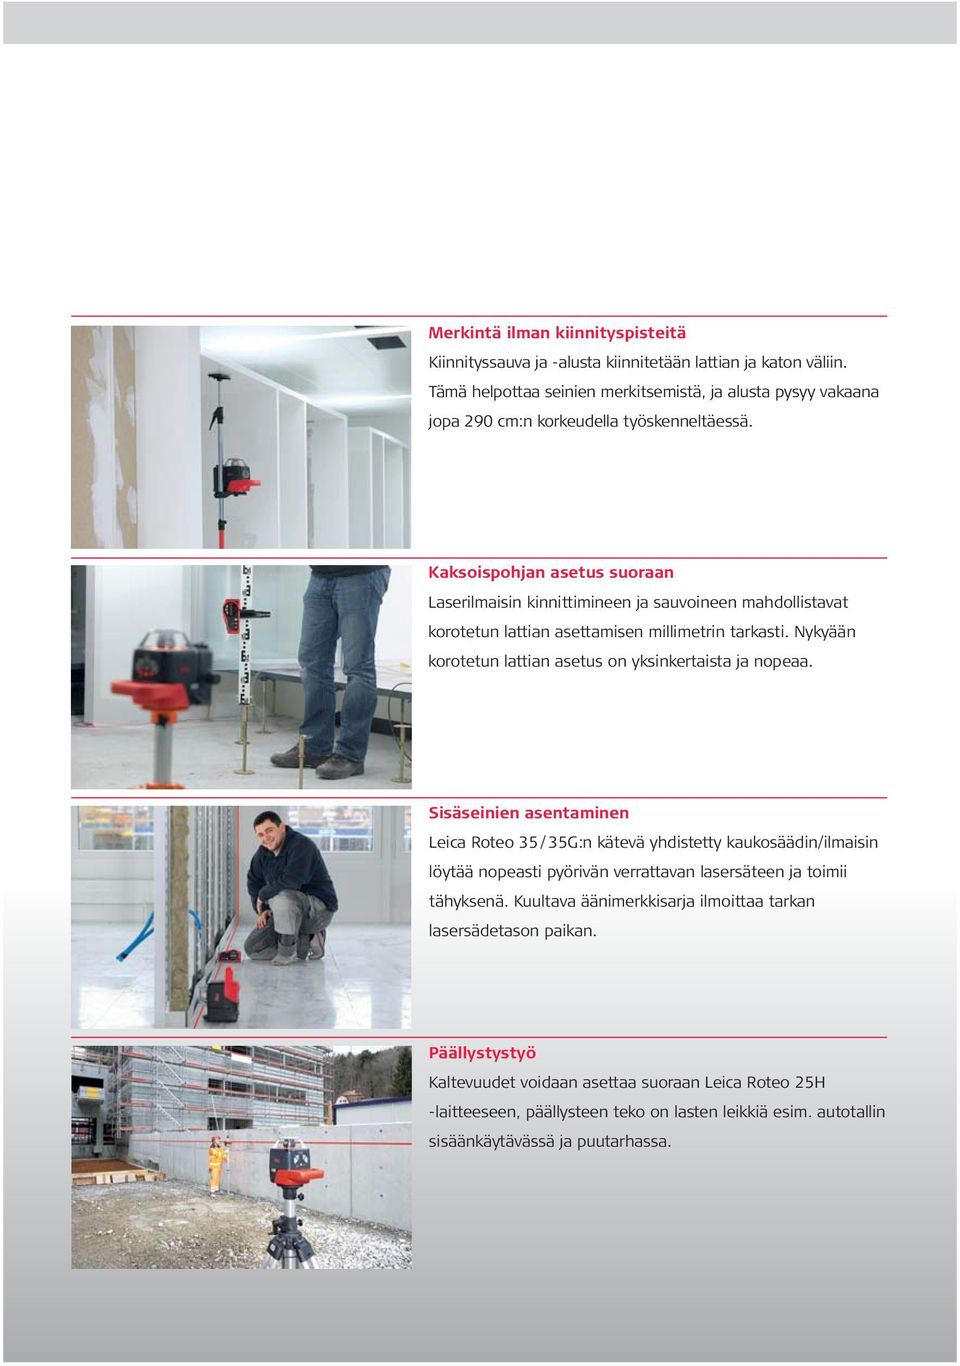 Kaksoispohjan asetus suoraan Laserilmaisin kinnittimineen ja sauvoineen mahdollistavat korotetun lattian asettamisen millimetrin tarkasti.